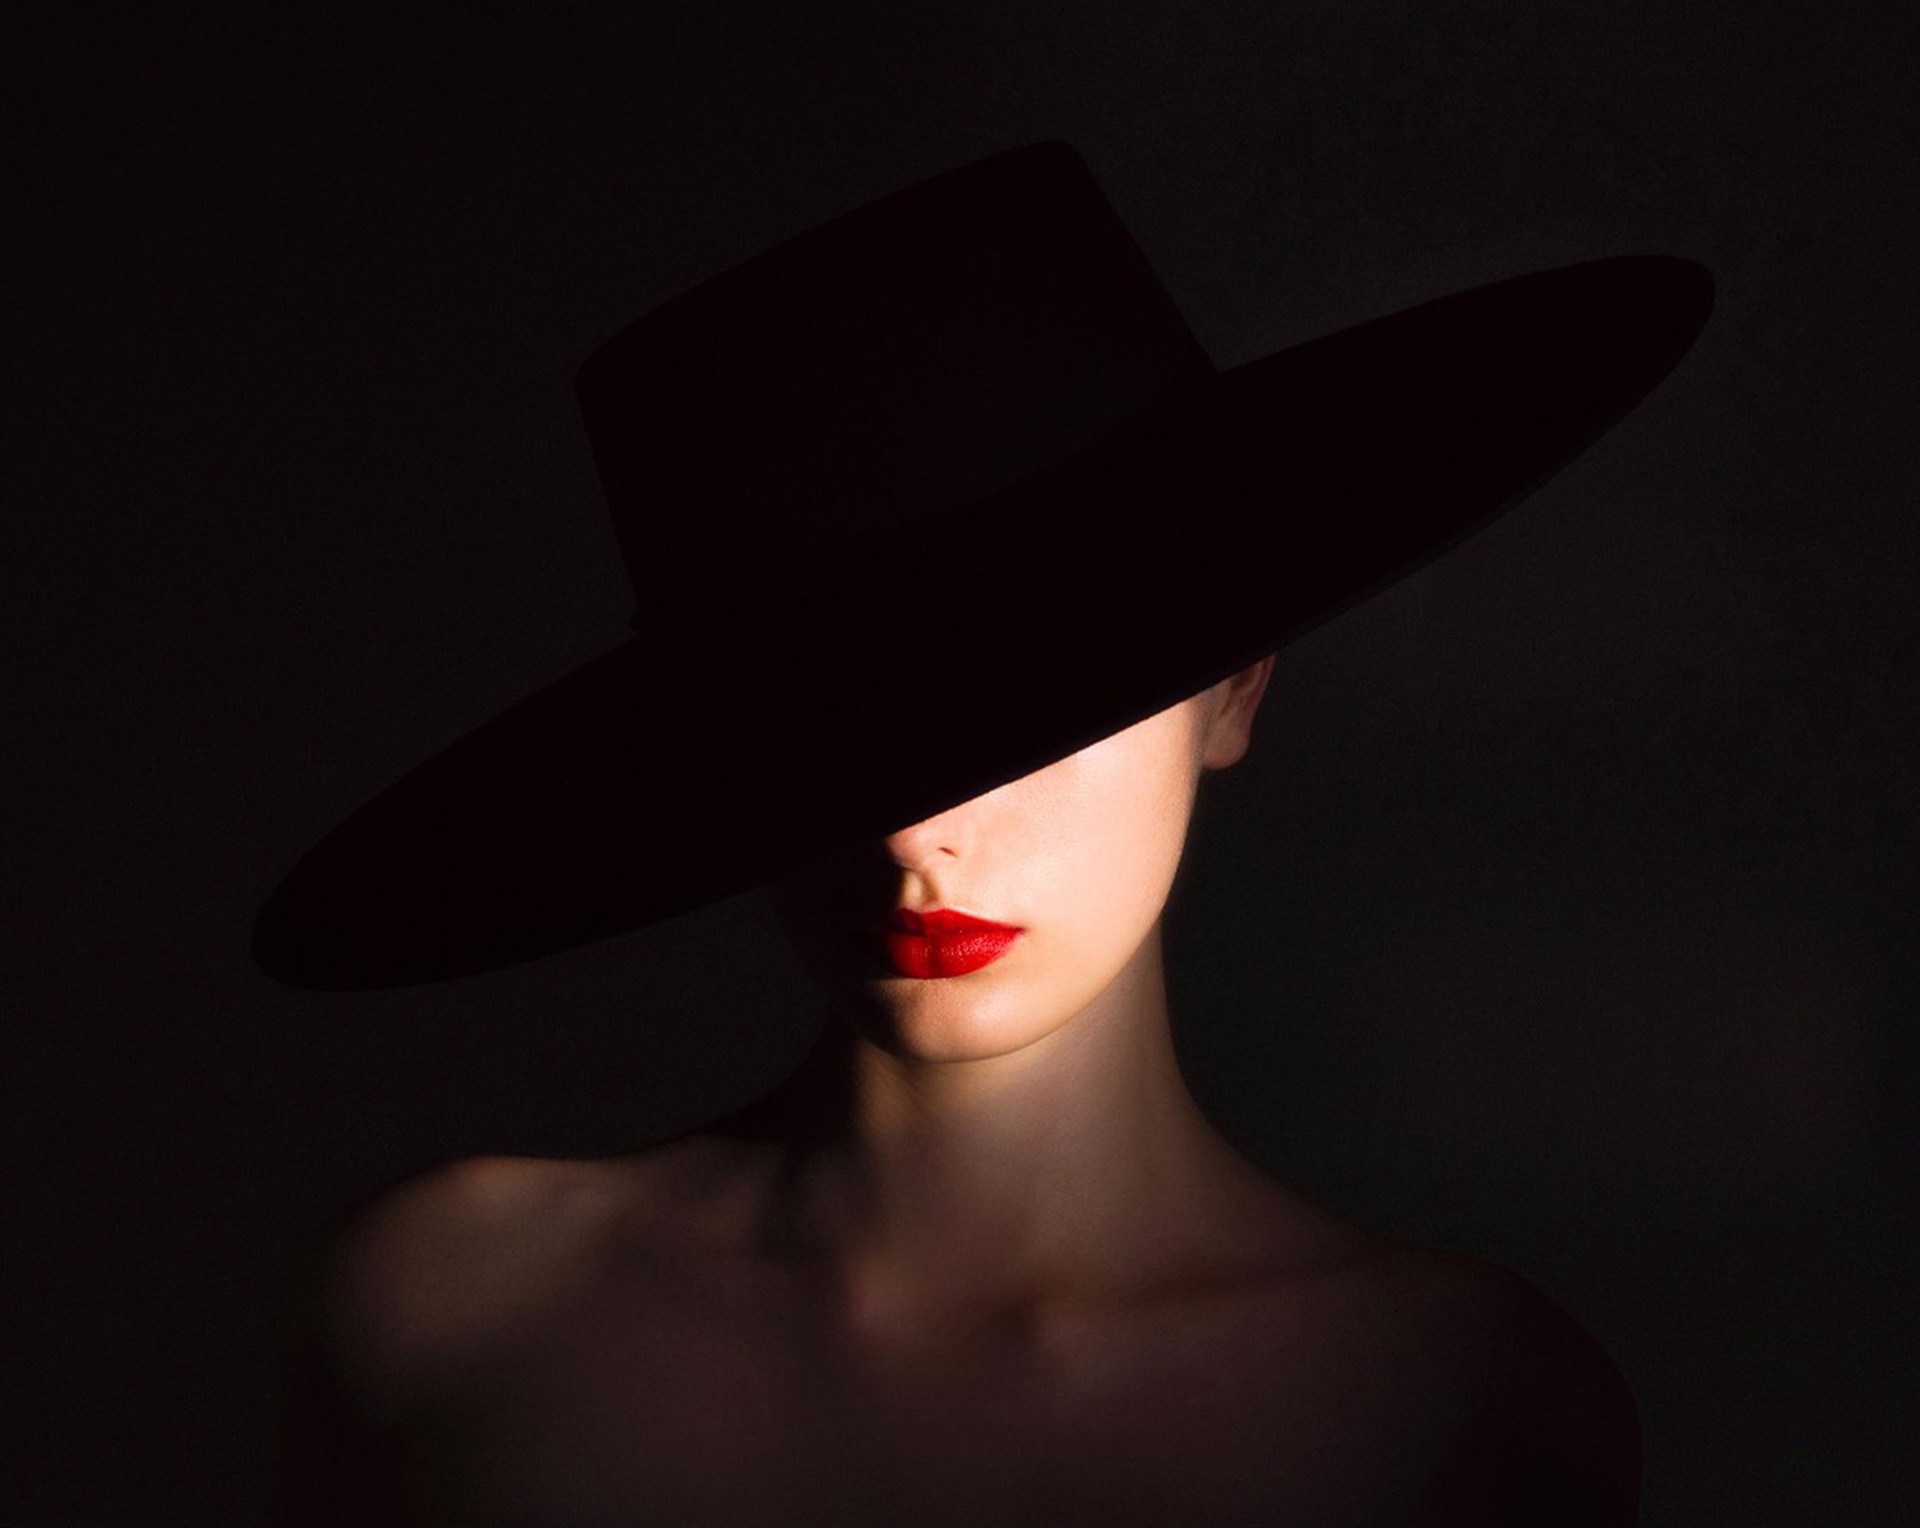 Shadow Hat by Tyler Shields